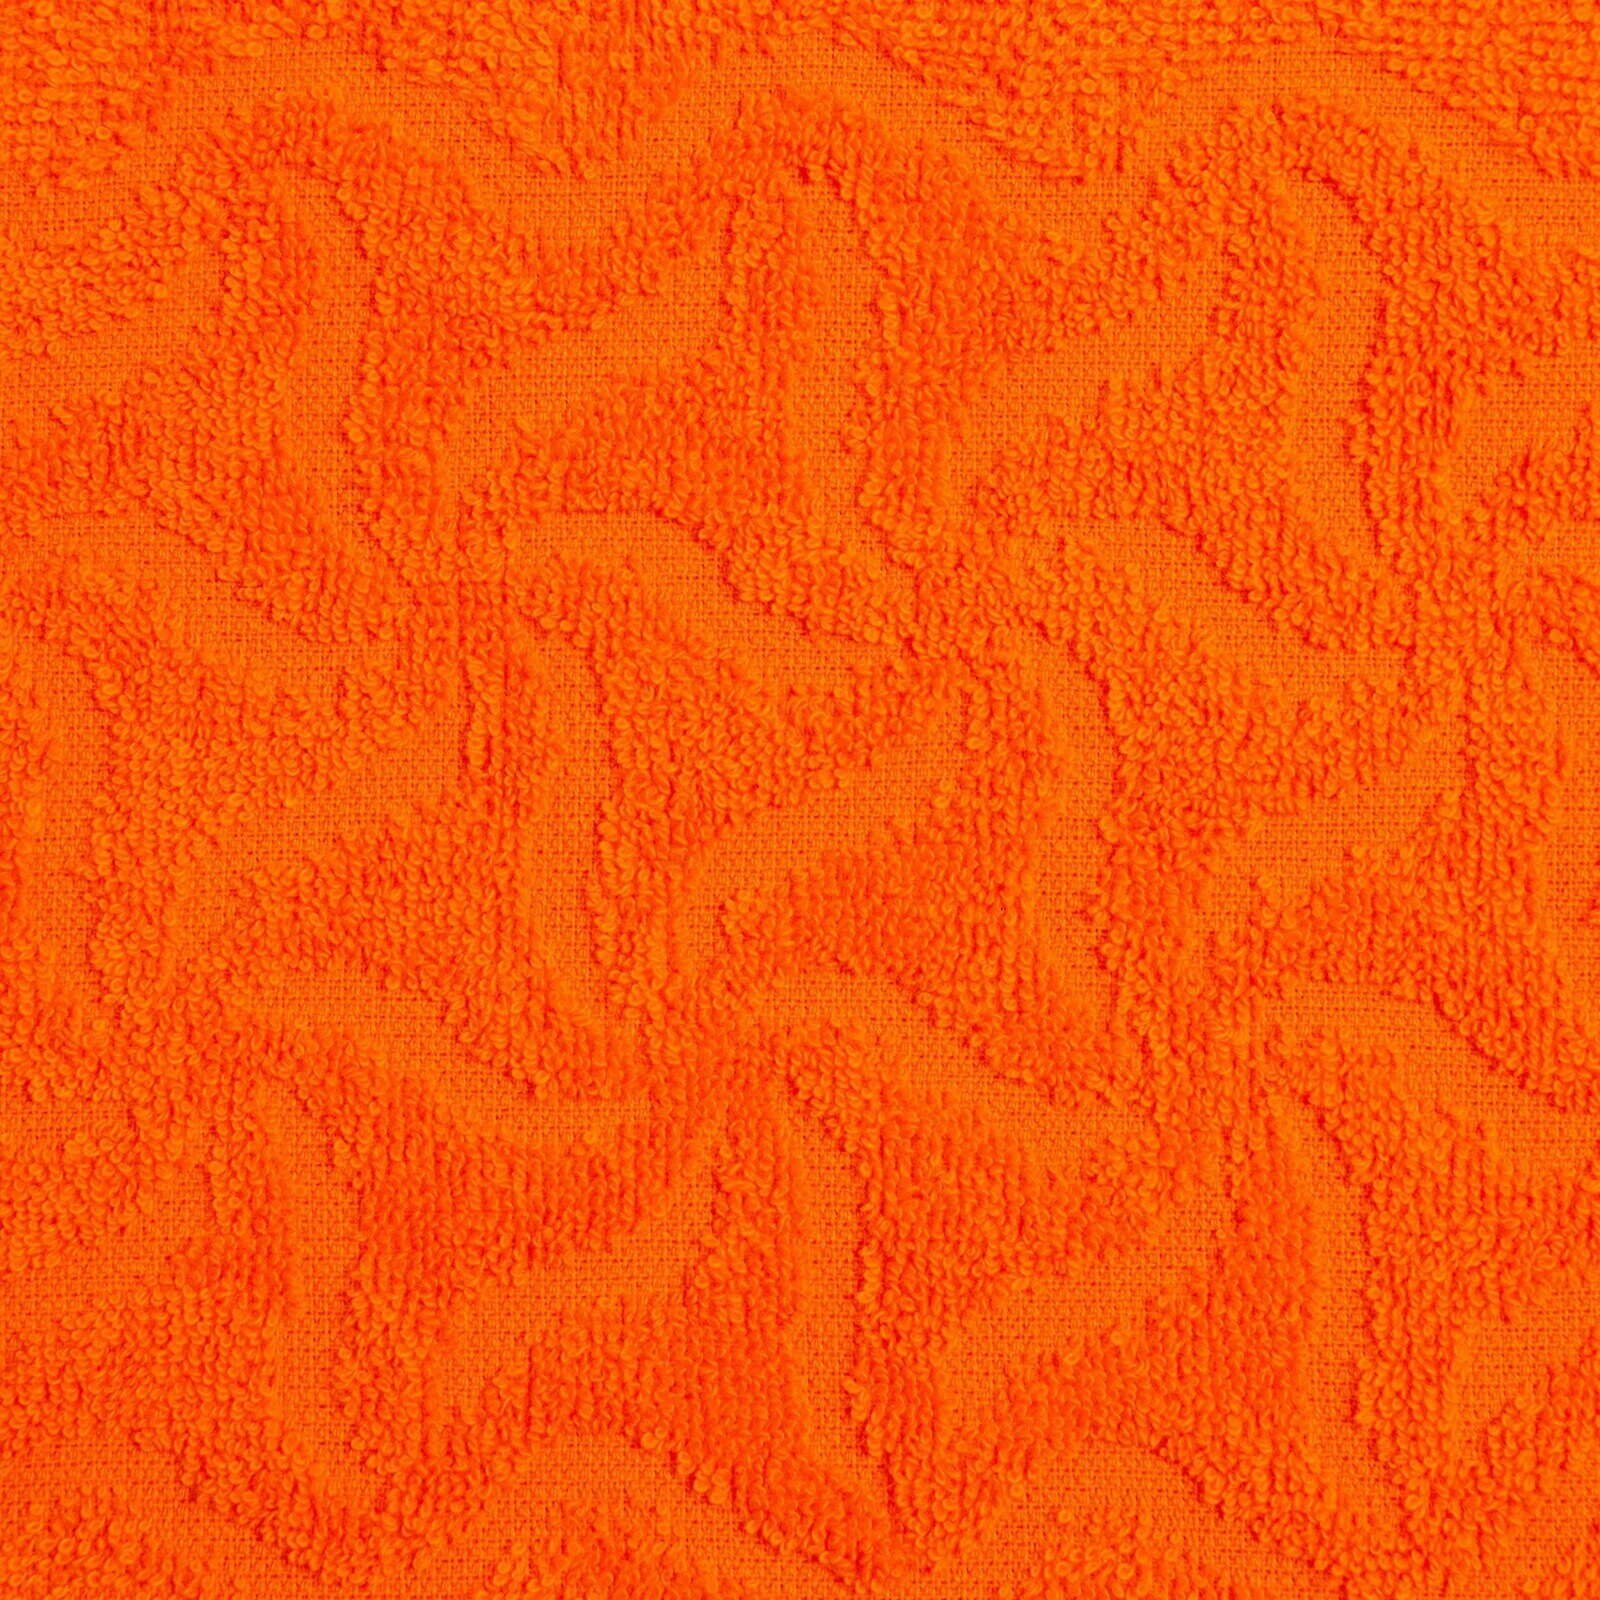 Полотенце махровое Радуга, 100х150см, цвет оранжевый, 295гр/м, хлопок